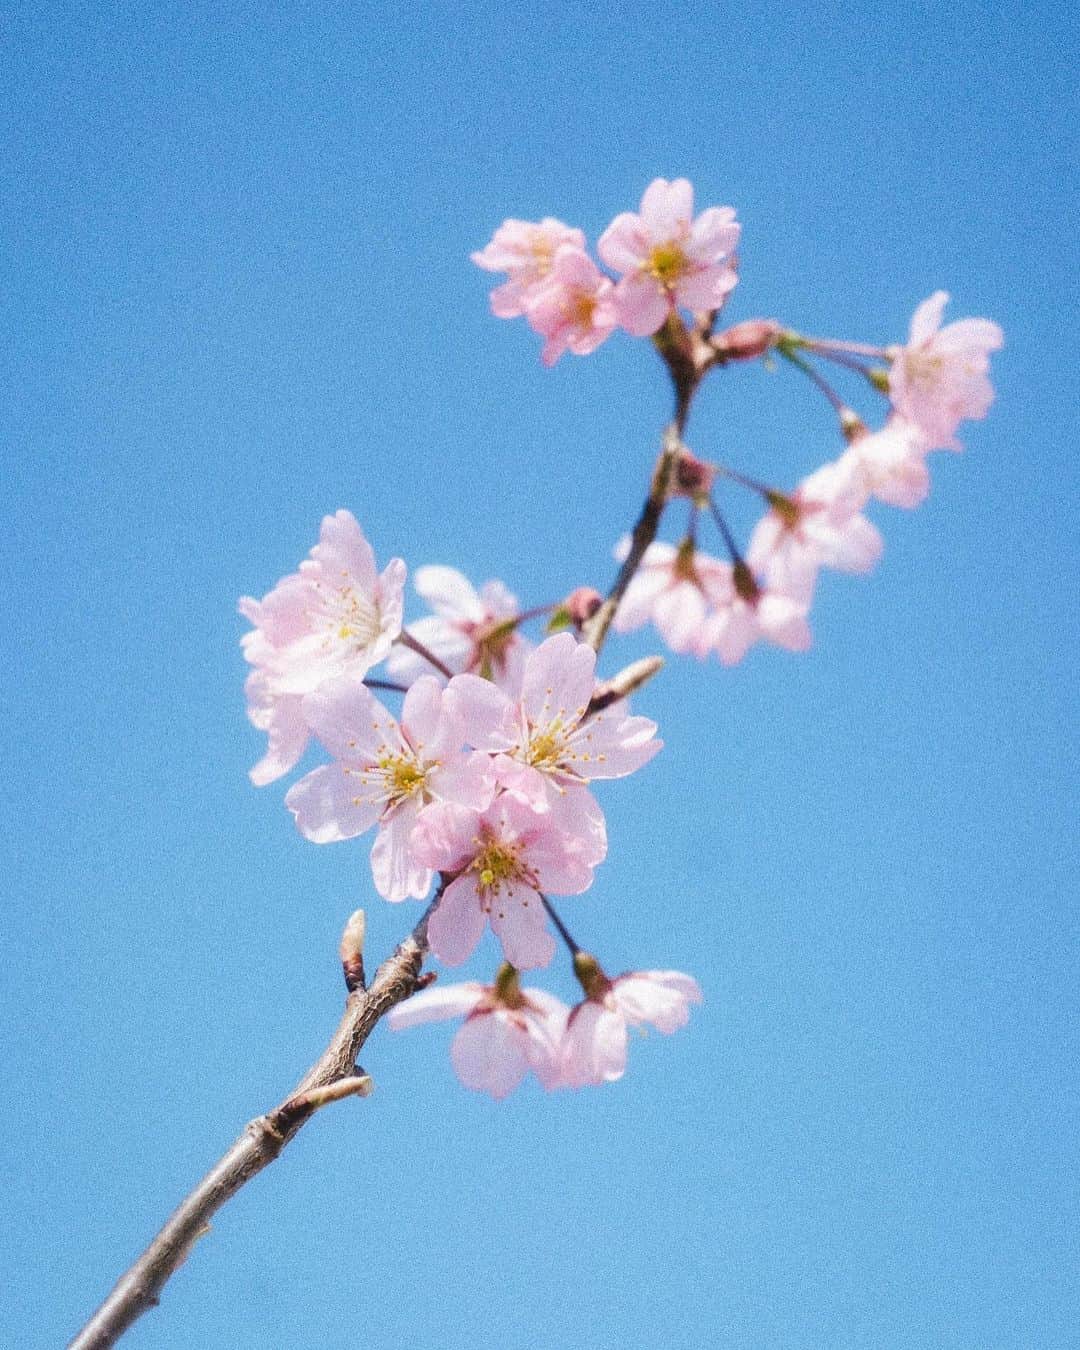 武居詩織のインスタグラム：「庭の桜が咲いた。  切り枝の桜を買ってきたのは昨年のこと。 とても生命力に溢れていてすぐに葉が出てきたので、そのまま花瓶に生けて愉しんでいたらなんと根まで出てきた。  試しに鉢に植え替えてみたらあれよあれよという間に葉を茂らせて、ついには蕾まで。  昨年は白に近い薄桃色だったのに、今年は品種が変わったのかと思うくらいに濃密な色へ。きっと少ない花たちの中にぎゅっと力が詰まっているのかな。 切り枝だったから細長くて控えめな出立ちだけれど、可憐でとても愛おしい。  こうしてあっという間にお庭に春がやってきた。 昨年はまだ植物たちも少なかったので、賑やかな春を迎えるのは初めて。 私の家は大家さんが可愛いガーデニングをしていて、共有部には四季折々の花たちがたえず咲き続けている。 育ててみると何気ない街の植物たちにより目がいく。それぞれの花の時期は短いのに、移り変わるように花が愉しめるようになっている。 私のお庭もそんな風にしたい。  ミモザも桜もあと少しだろうか。今年は本当に早い。 次はモッコウバラが咲くのが楽しみ。 昨年散り際に買ってきて、ベランダに面したキッチンの窓にそわせた。 冬は全て葉が落ちてしまったけれど、近ごろの暖かさで花芽がにょきにょきと。 お庭の中では去年よりいちばん大きく育ったモッコウバラ。 きっともこもこの可愛い花たちをたくさん咲かせてくれるはず。  たくさんの植物たちに囲まれた日々は、家にいるだけでとても幸せな気持ちにさせてくれる。 秘密の場所が増えたみたいに。」